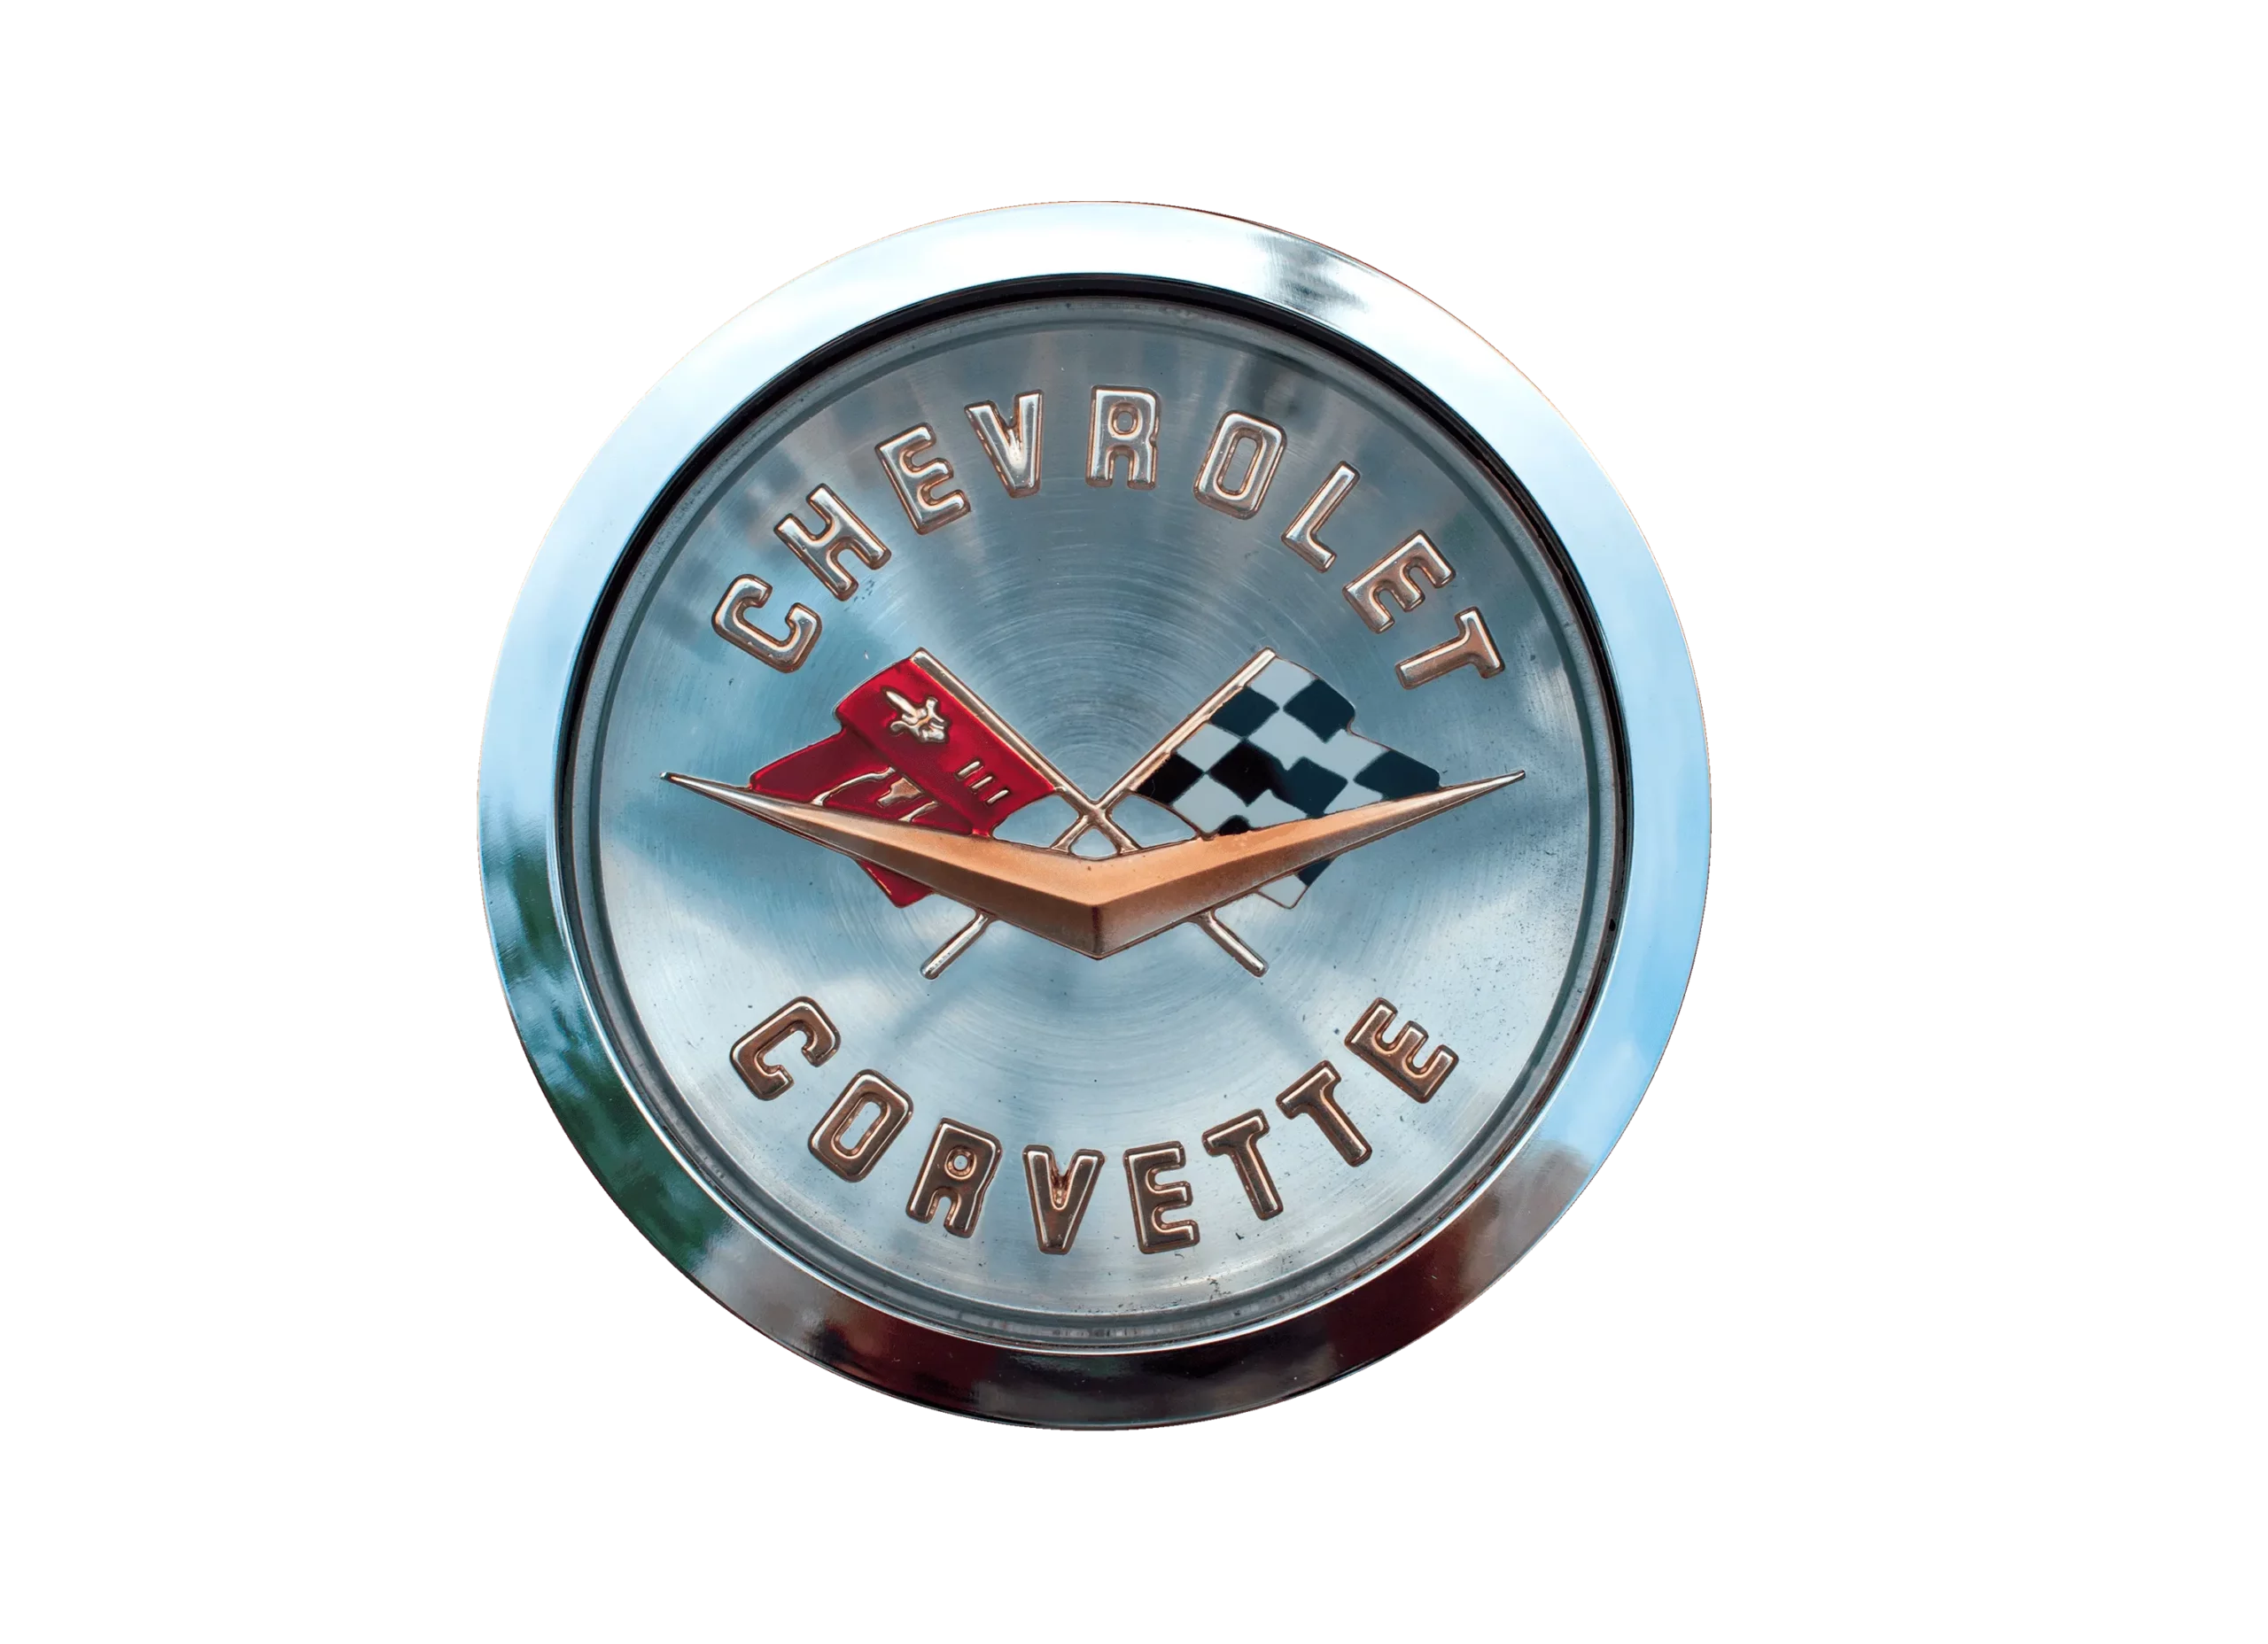 Corvette logo 1955-1962